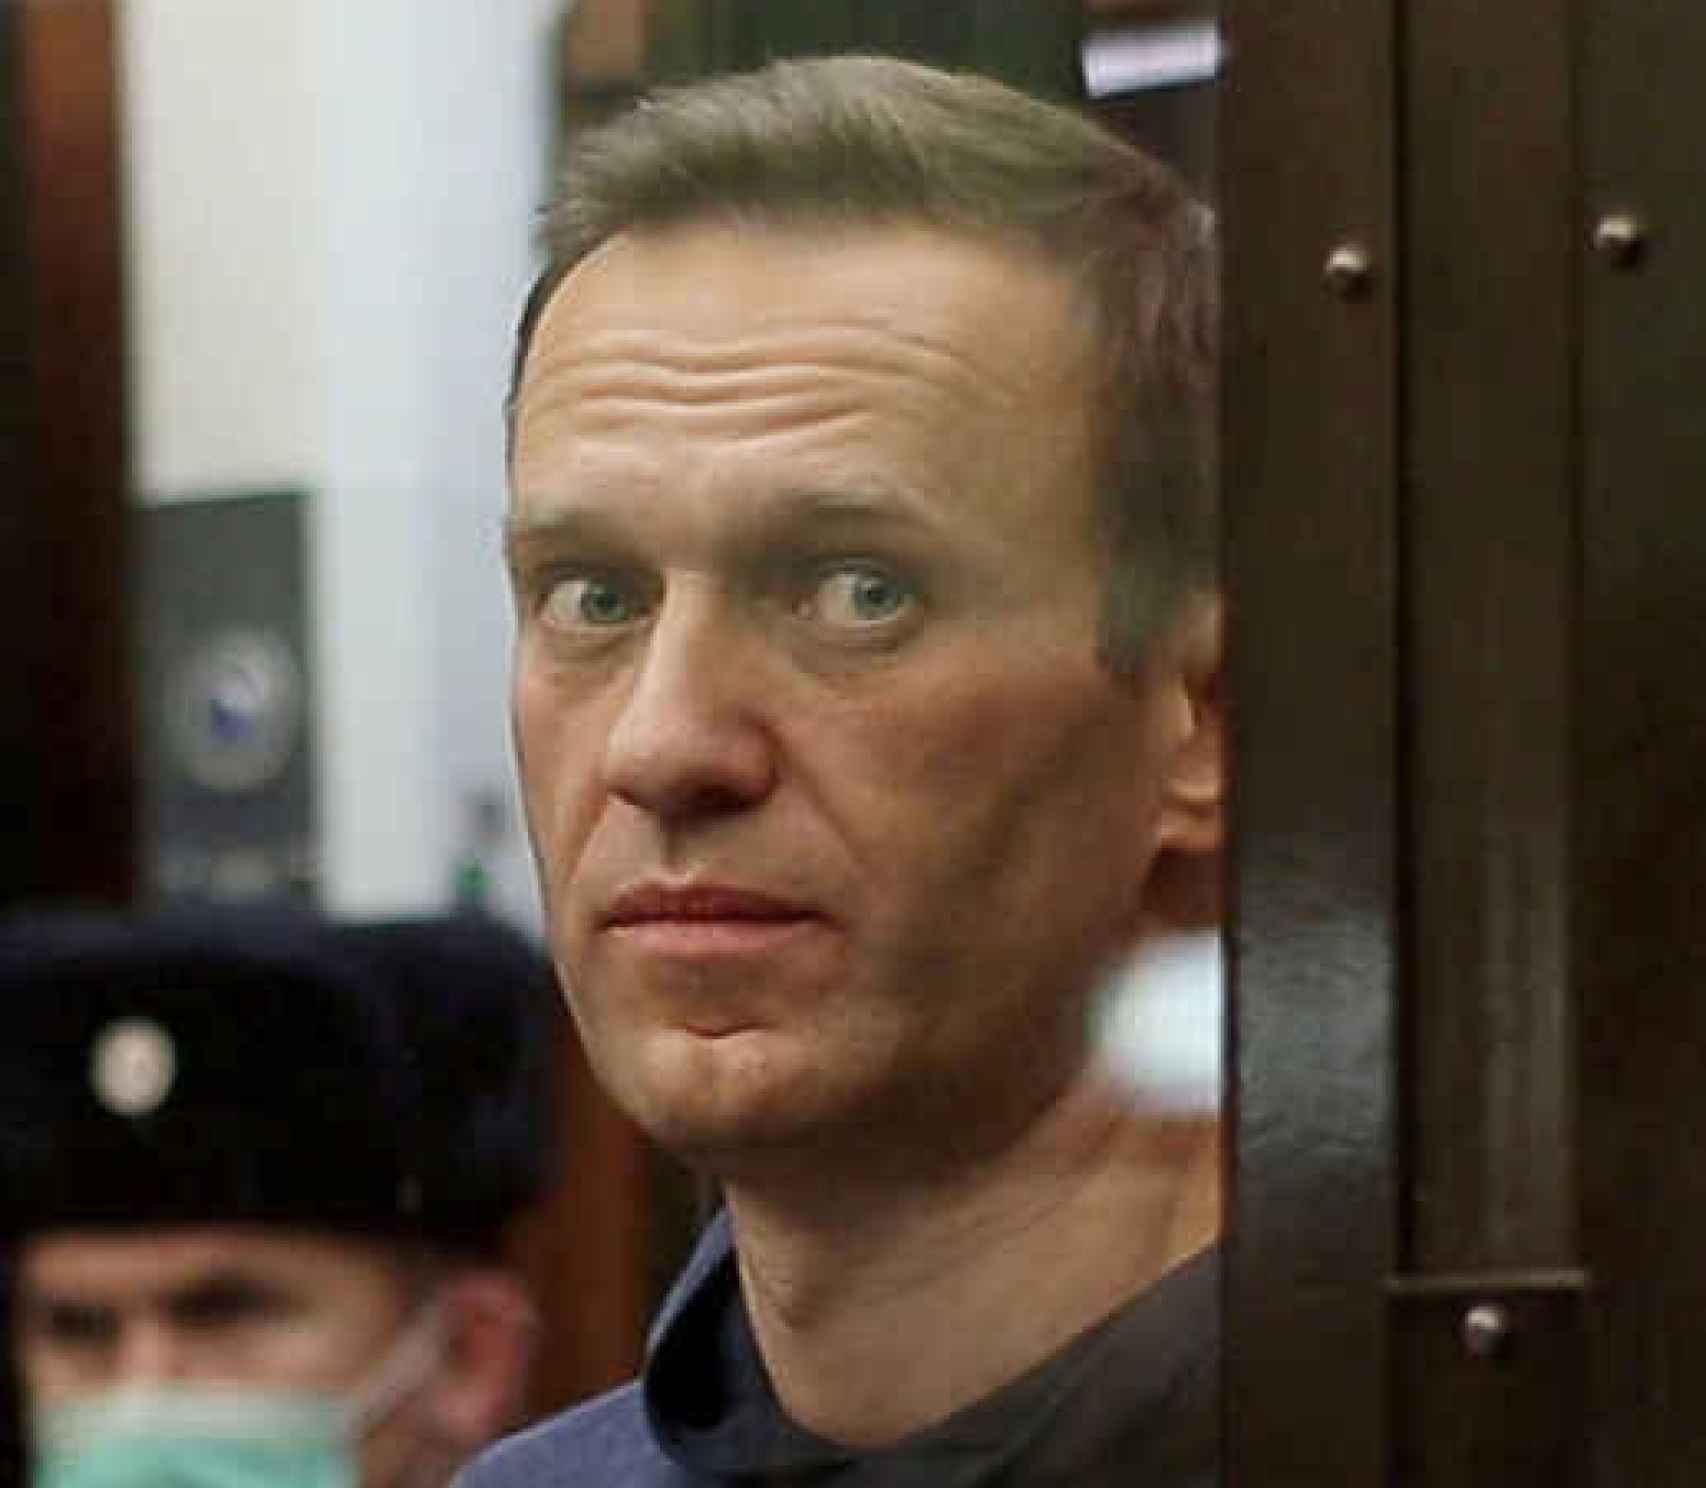 El opositor ruso Navalny